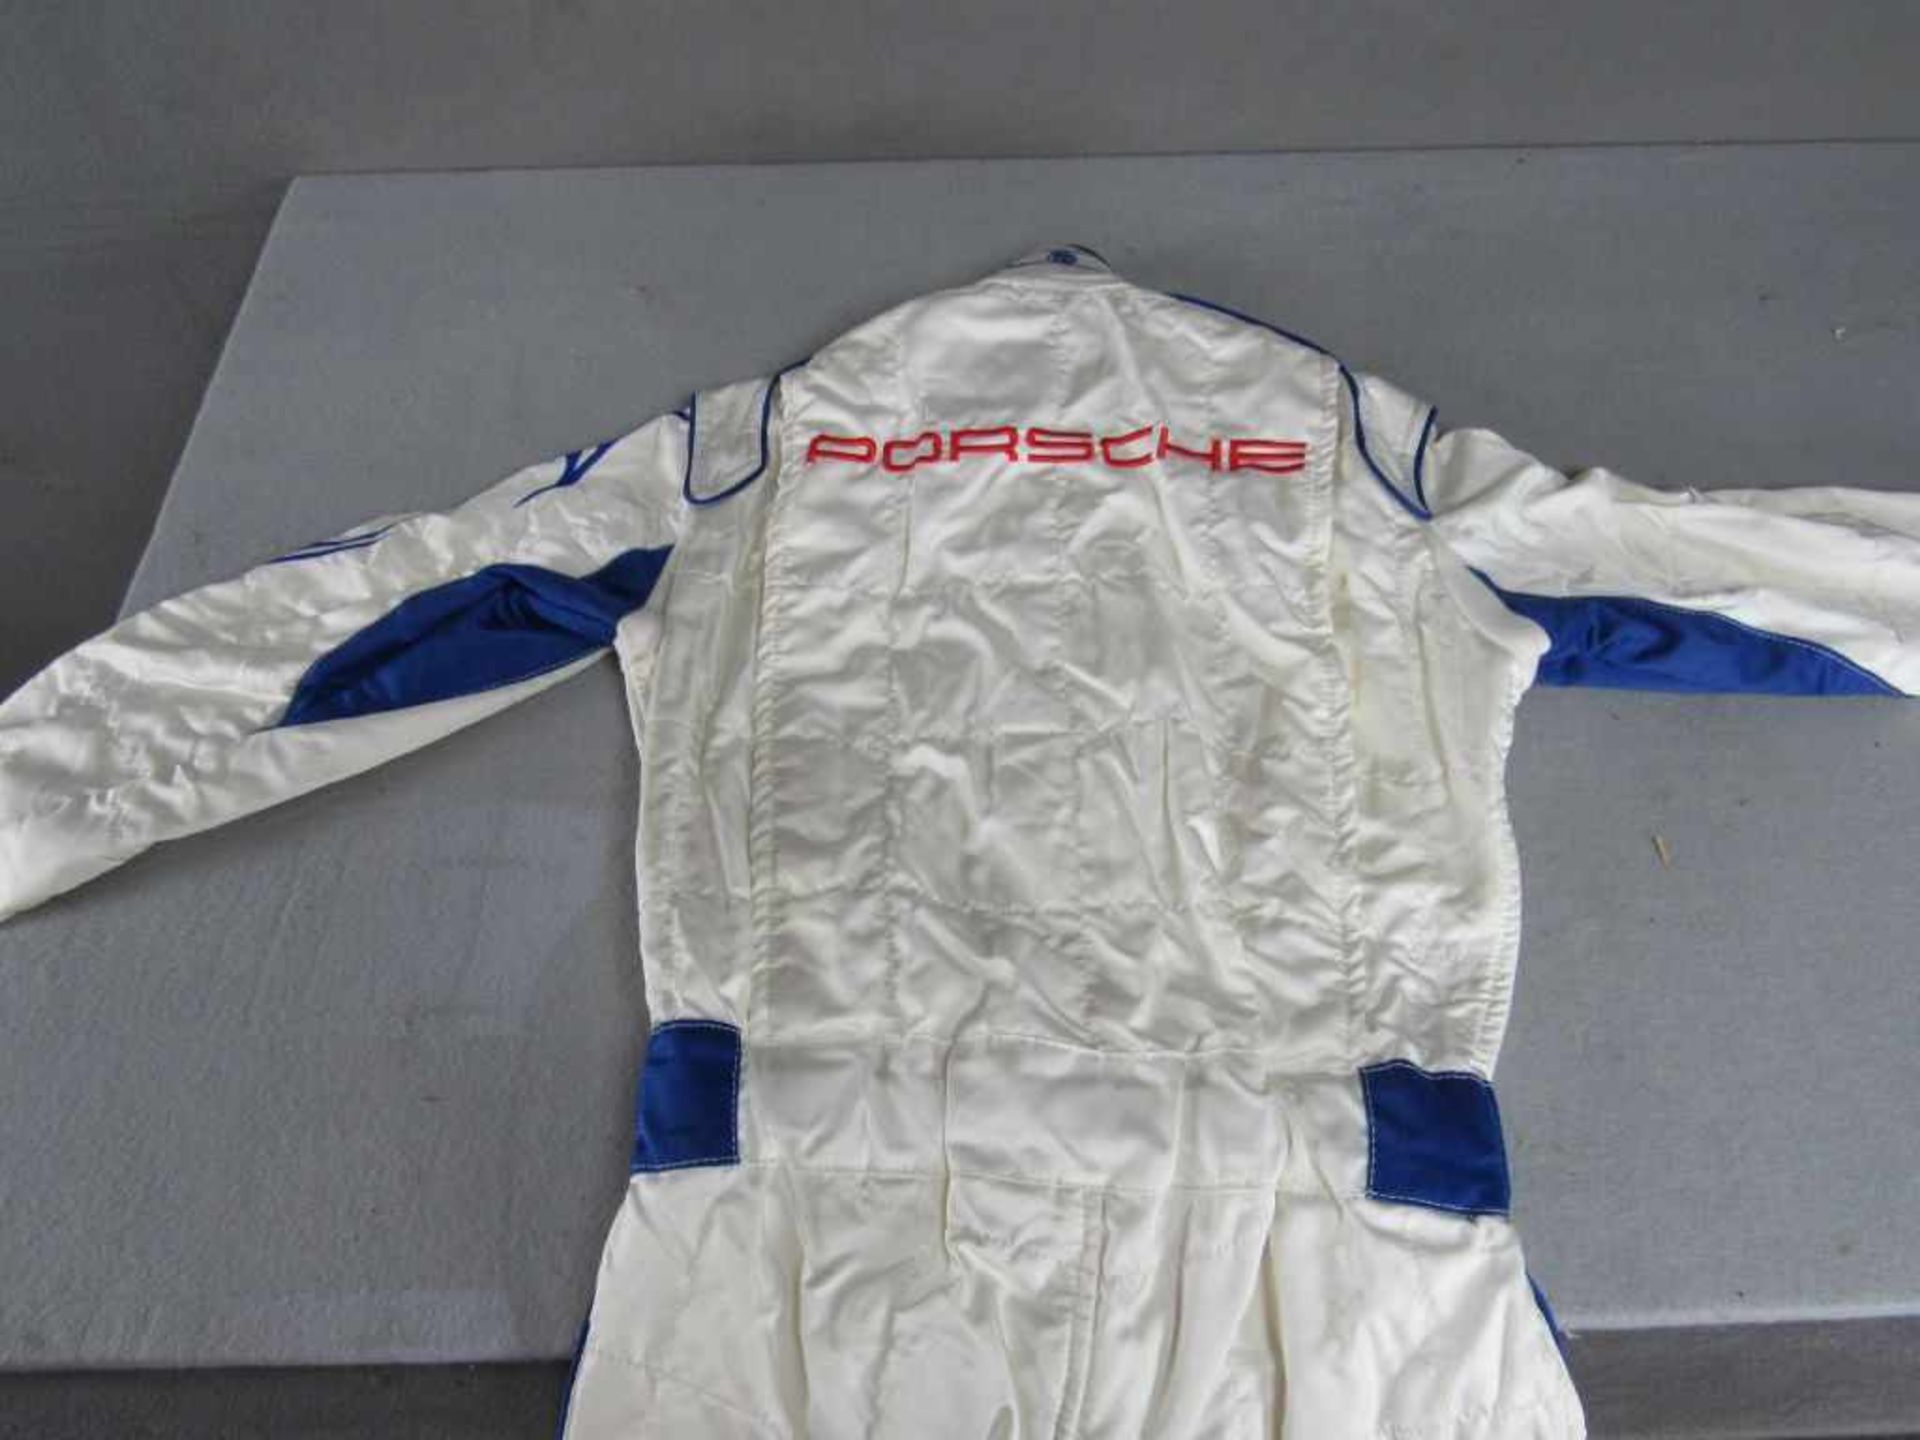 Rennkombi Porsche Autorennen 100% originales Stück 1x getragen sehr guter Zustand - Bild 5 aus 6